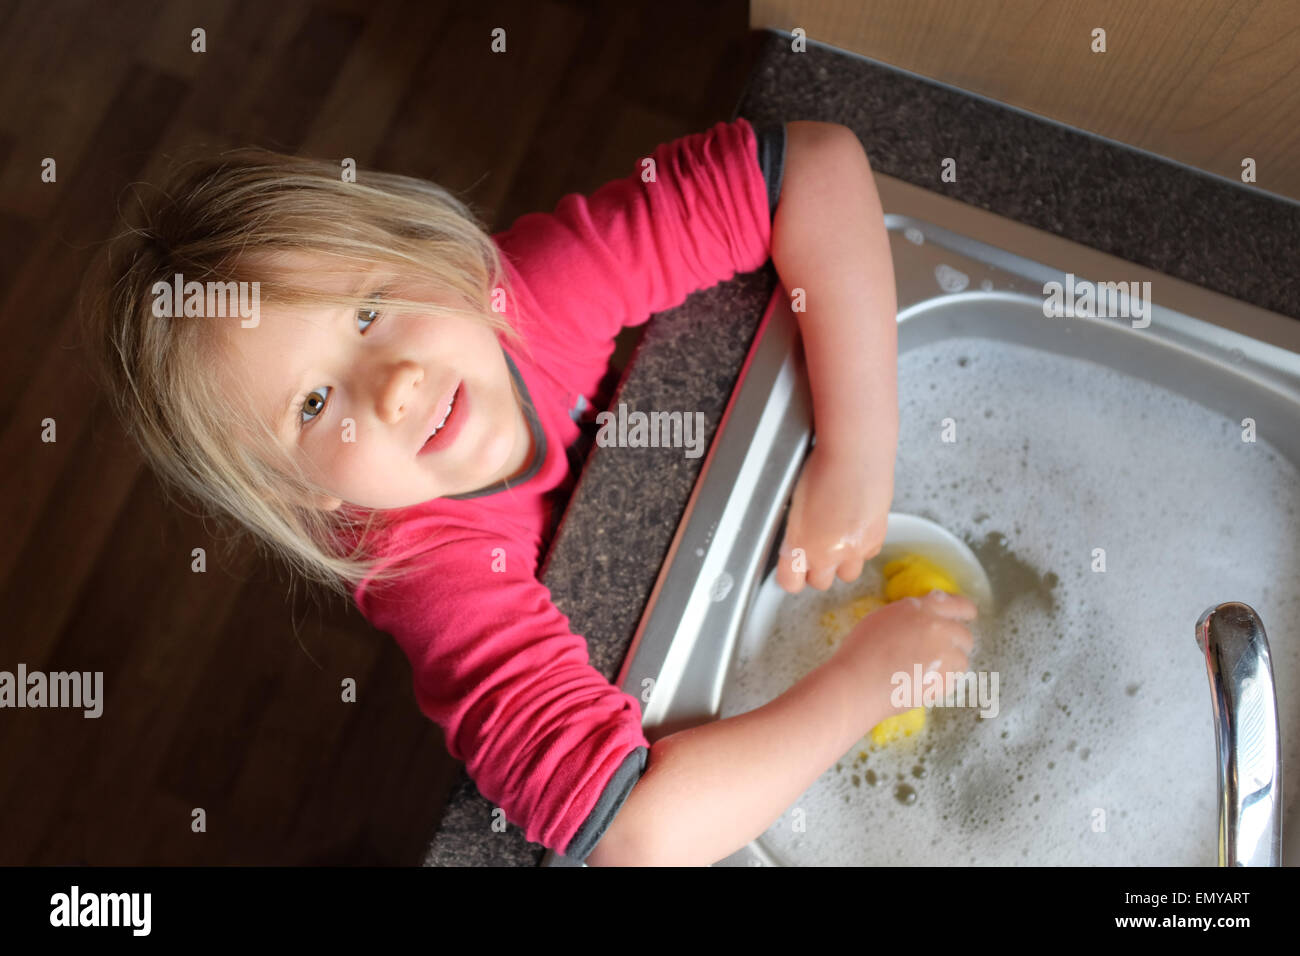 Une jeune fille la vaisselle et vaisselle Banque D'Images